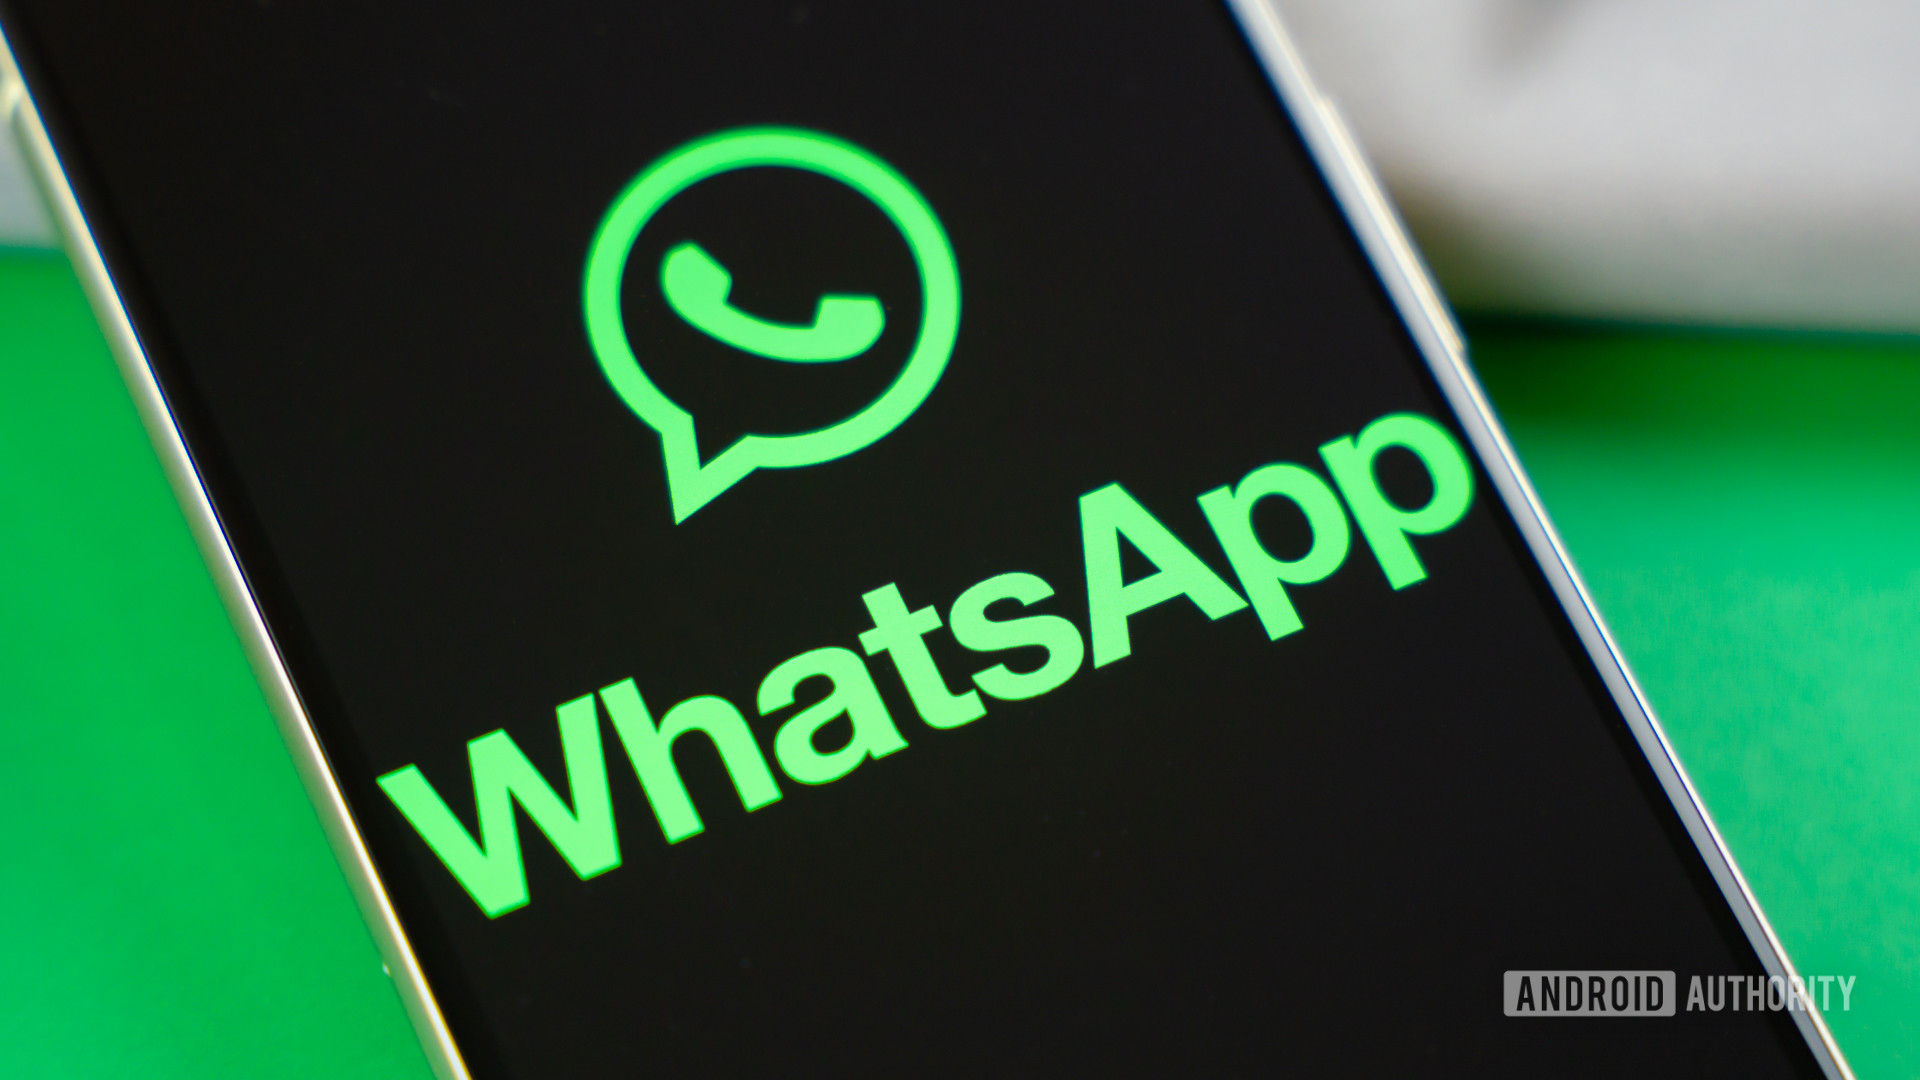 WhatsApp está trabajando en su propia versión de la función Quick Share de Android.